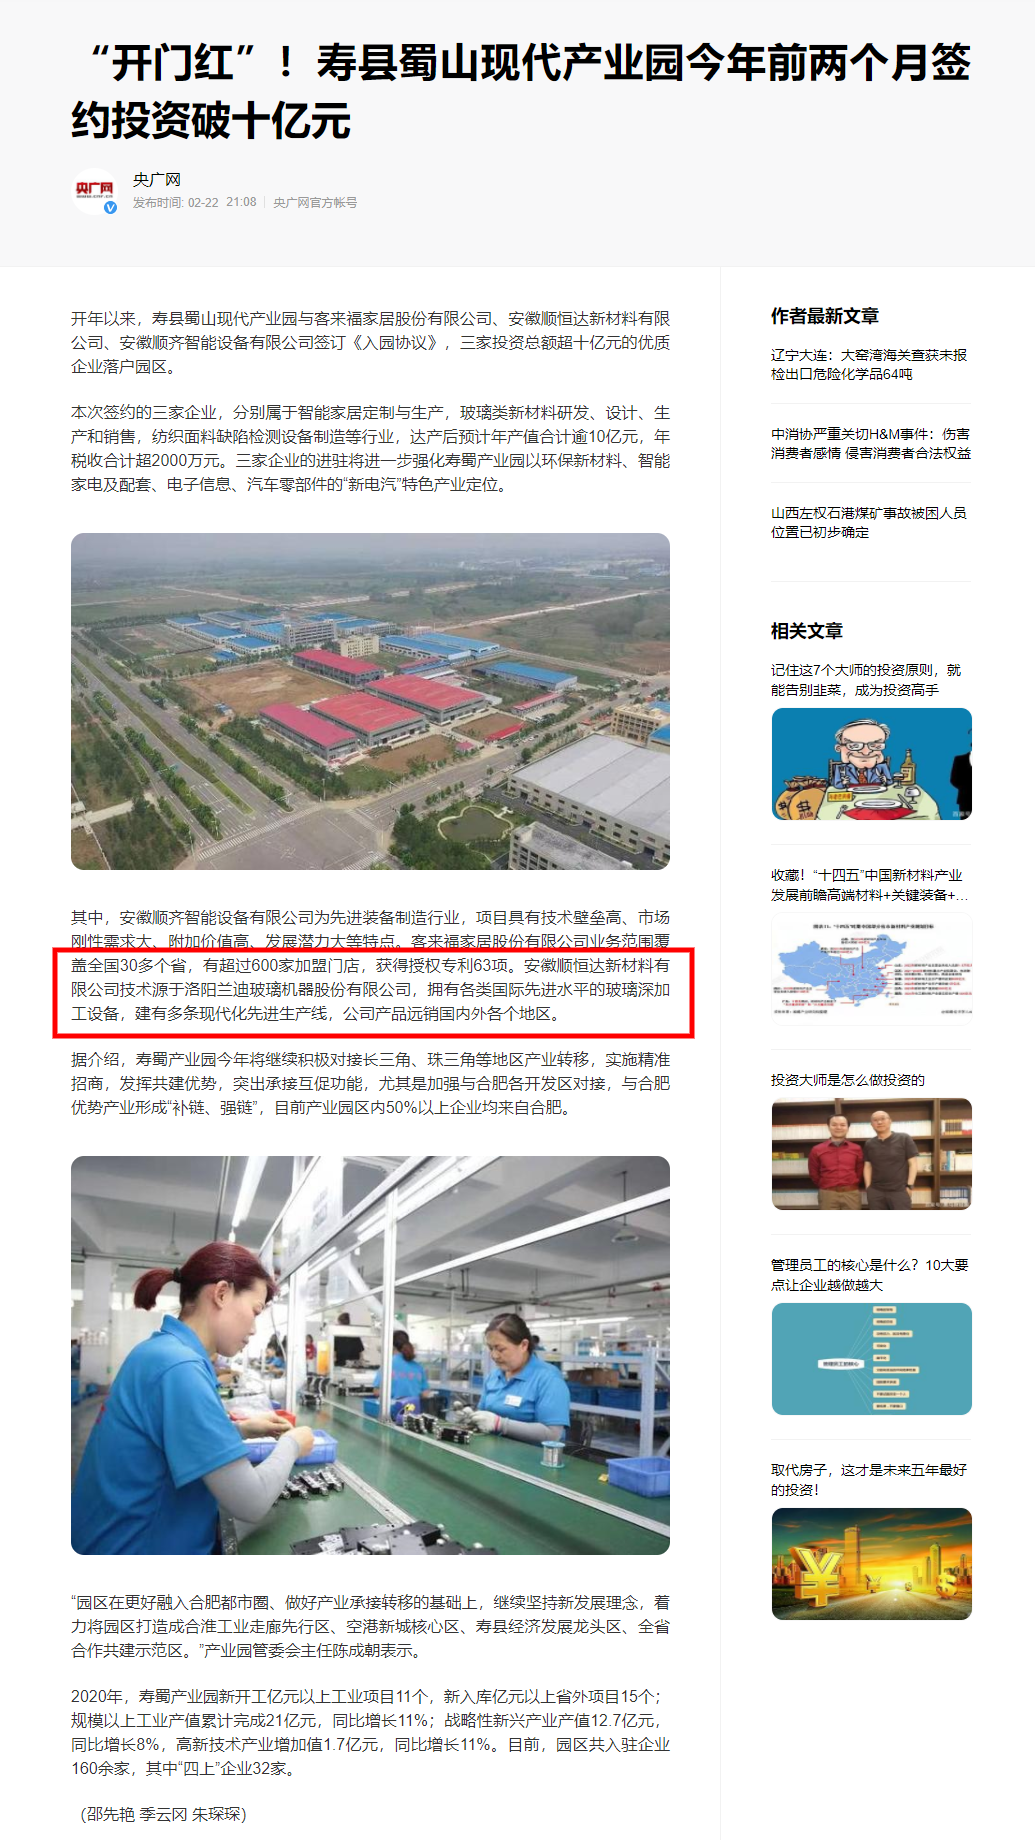 兰迪机器科技助力寿县蜀山现代产业园发展